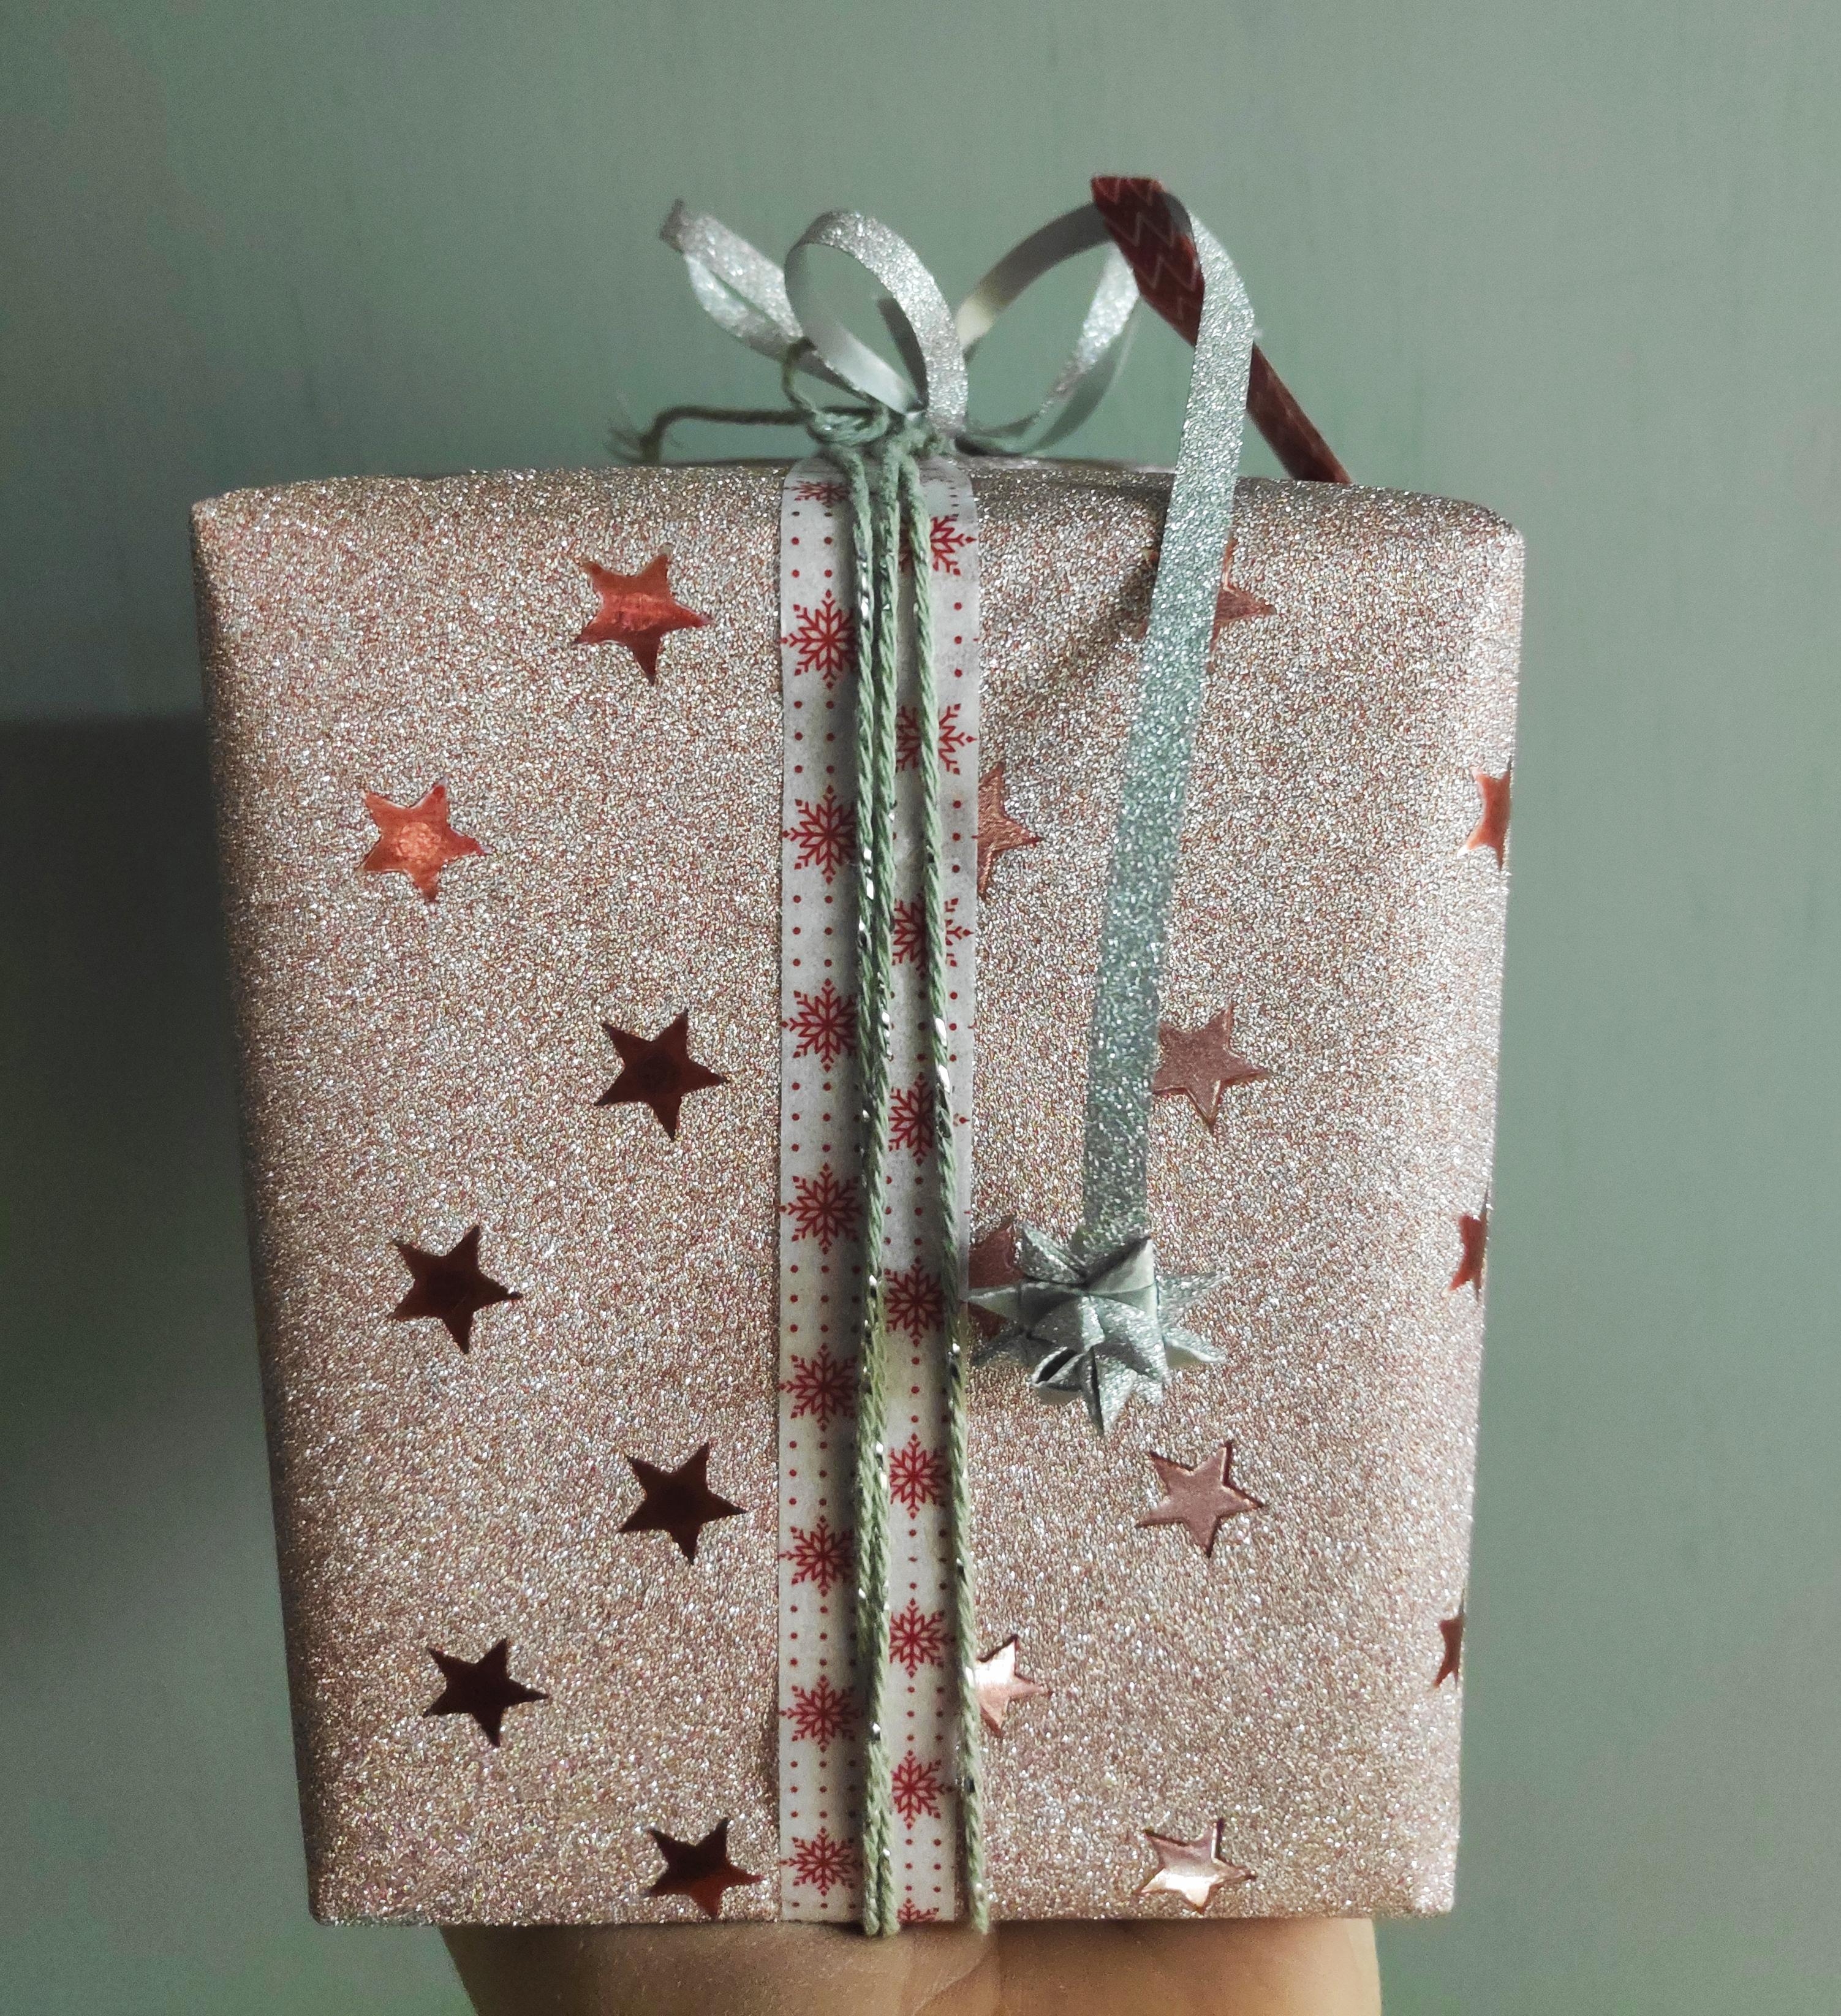 .Geschenkanhänger an der Schleife.
#Geschenke #DIY #Geschenkverpackung #Geschenanhänger #GermanStar #Weihnachtsdeko